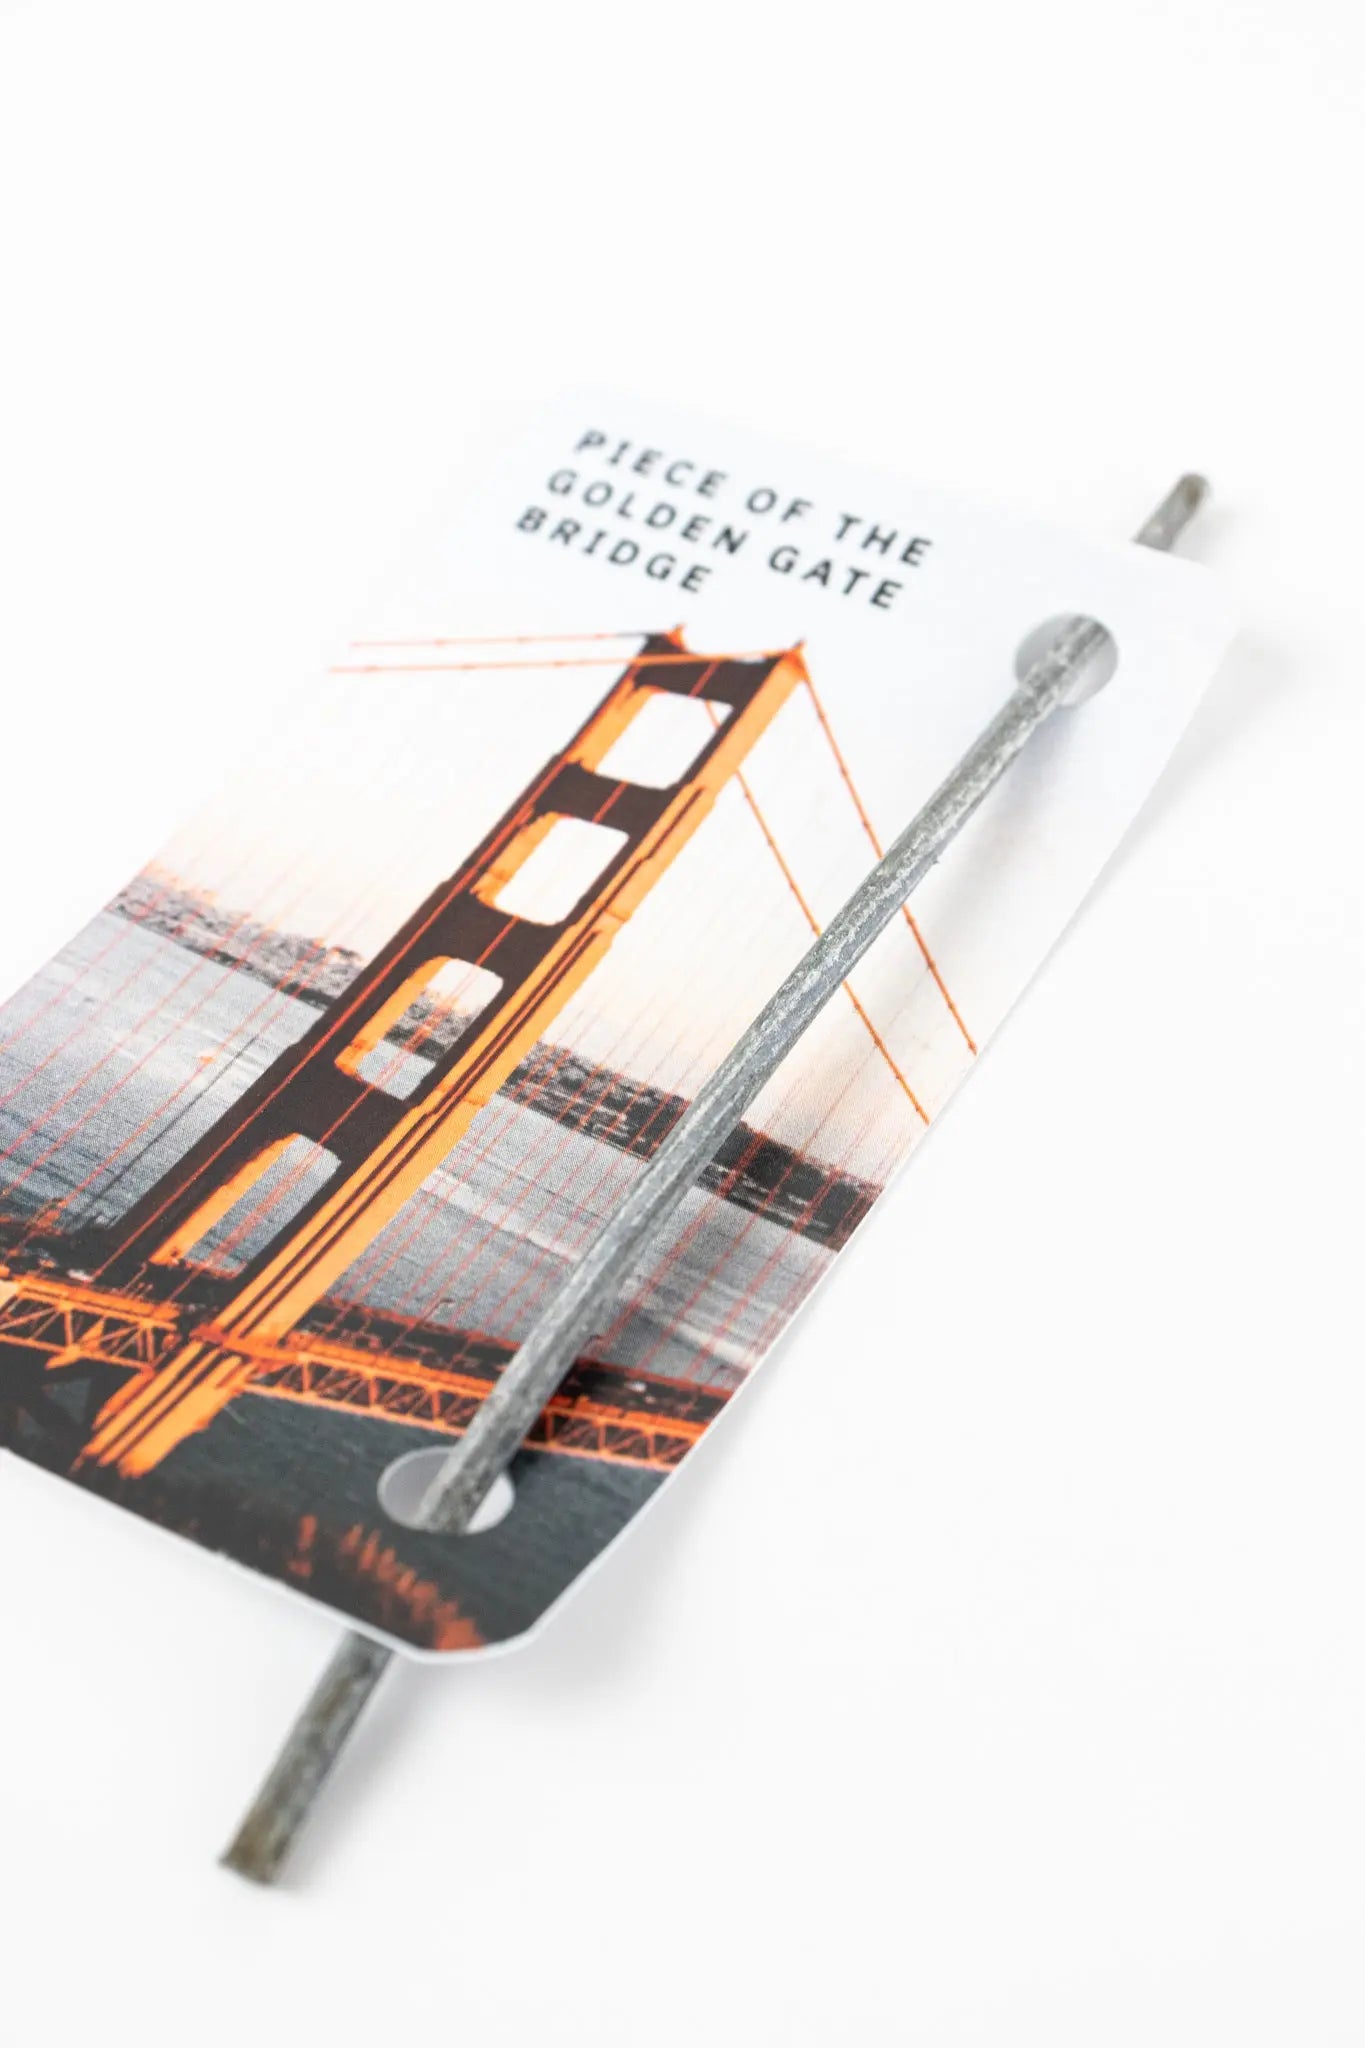 Golden Gate Bridge Cable - Stemcell Science Shop